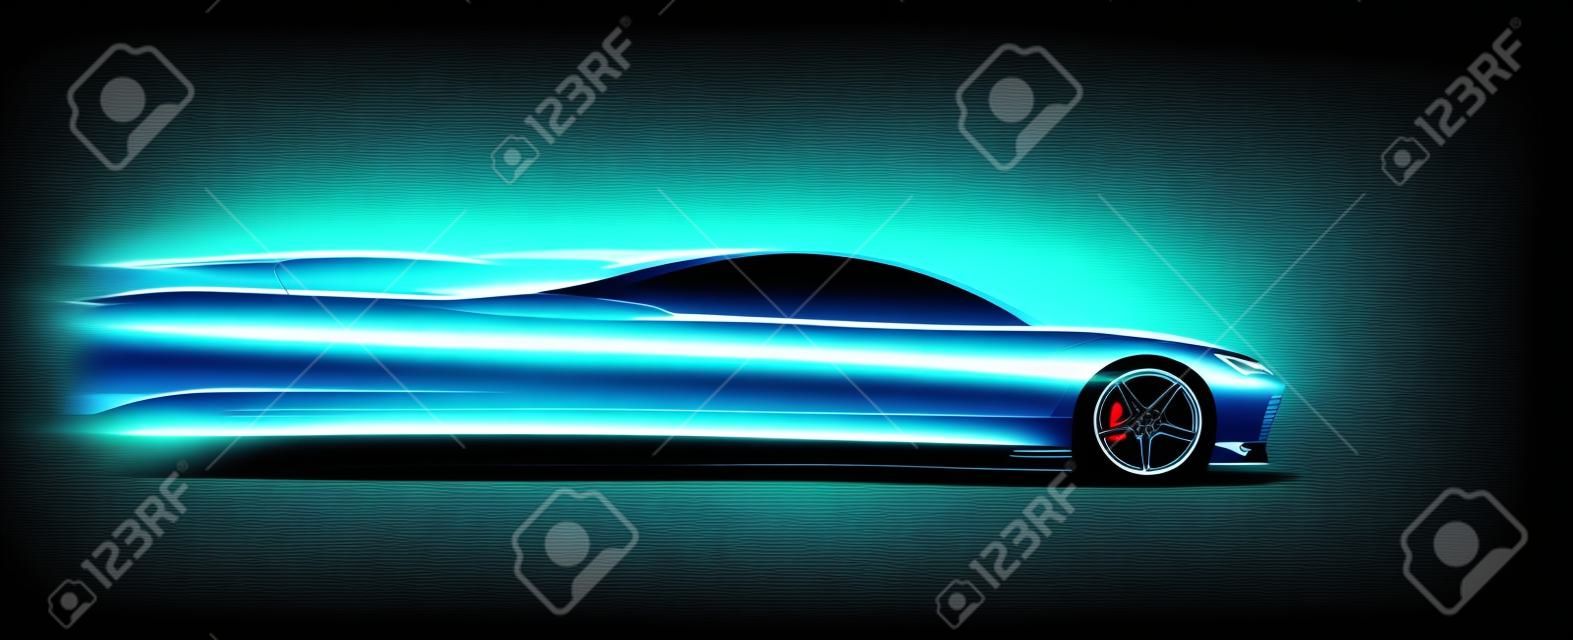 Widok z boku neon świecące sylwetka samochodu sportowego. Streszczenie nowoczesny styl ilustracji wektorowych eps 10.